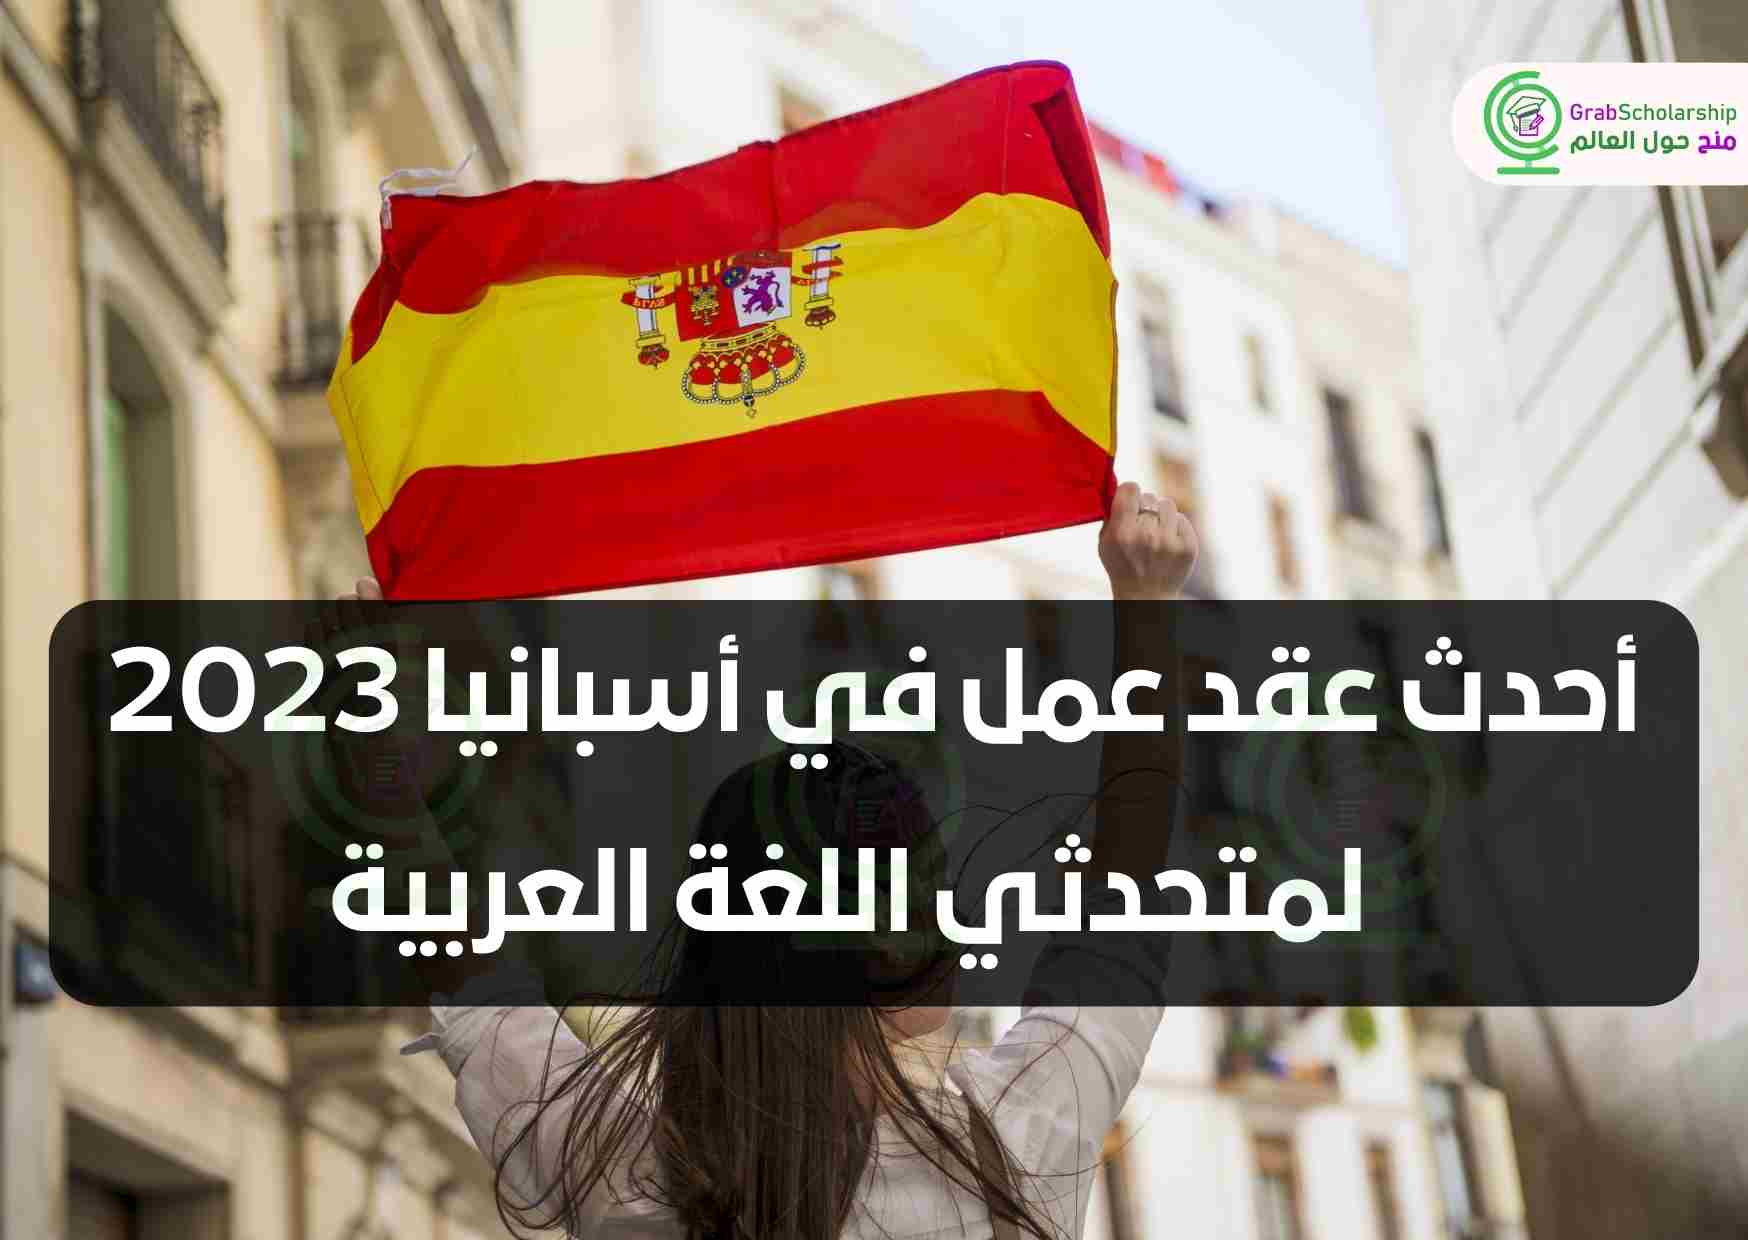 أحدث عقد عمل في أسبانيا 2023 لمتحدثي اللغة العربية